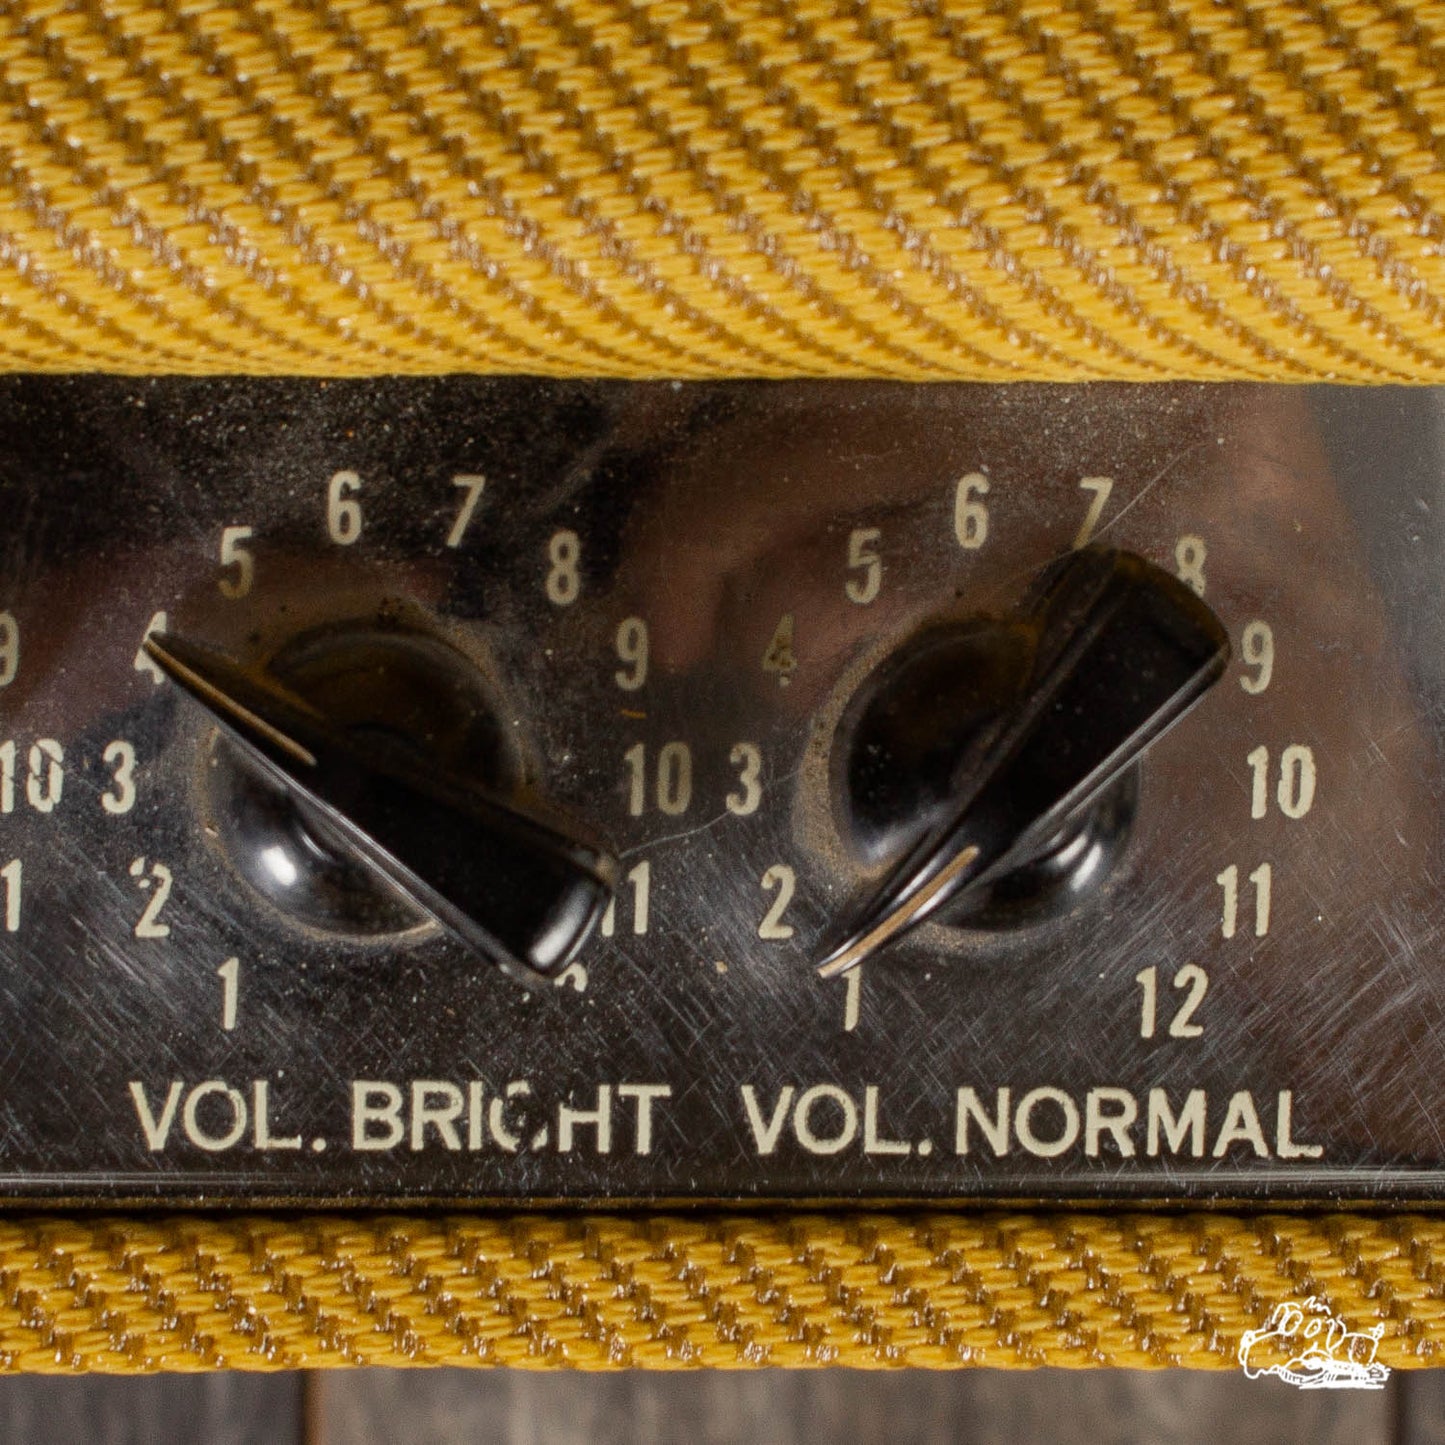 1956 Fender Twin Amplifier